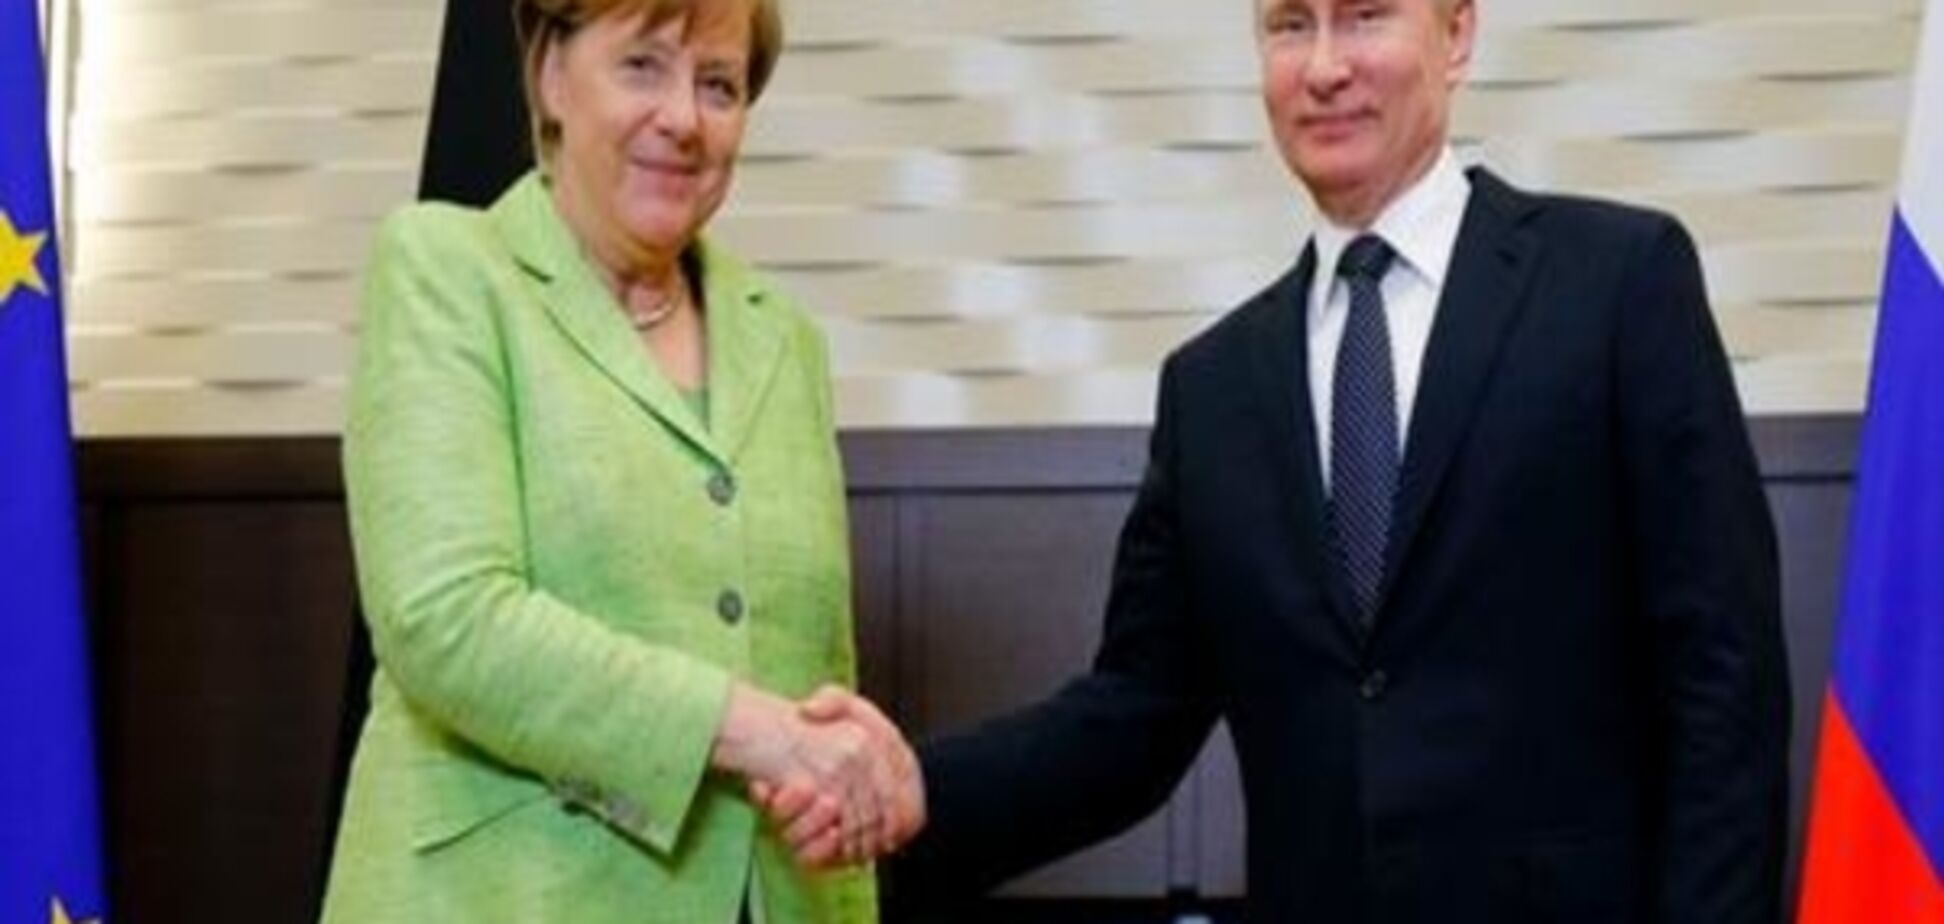 Меркель та Путін: що принесла Україні зустріч у Сочі